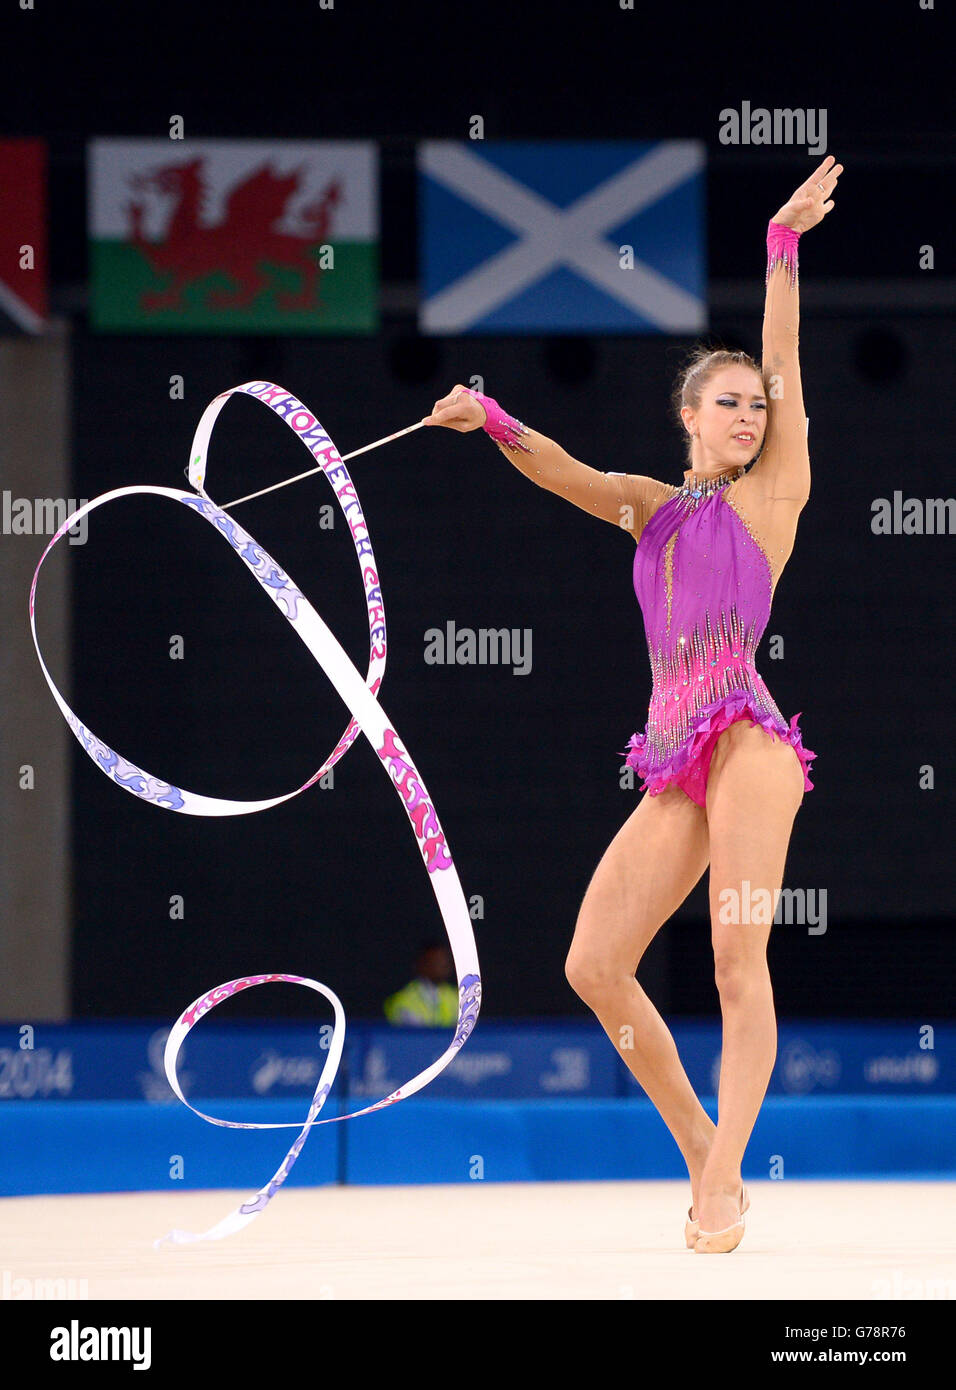 Francesca Jones du pays de Galles participe à la finale de la gymnastique rythmique individuelle à SSE Hydro lors des Jeux du Commonwealth de 2014 à Glasgow. Banque D'Images